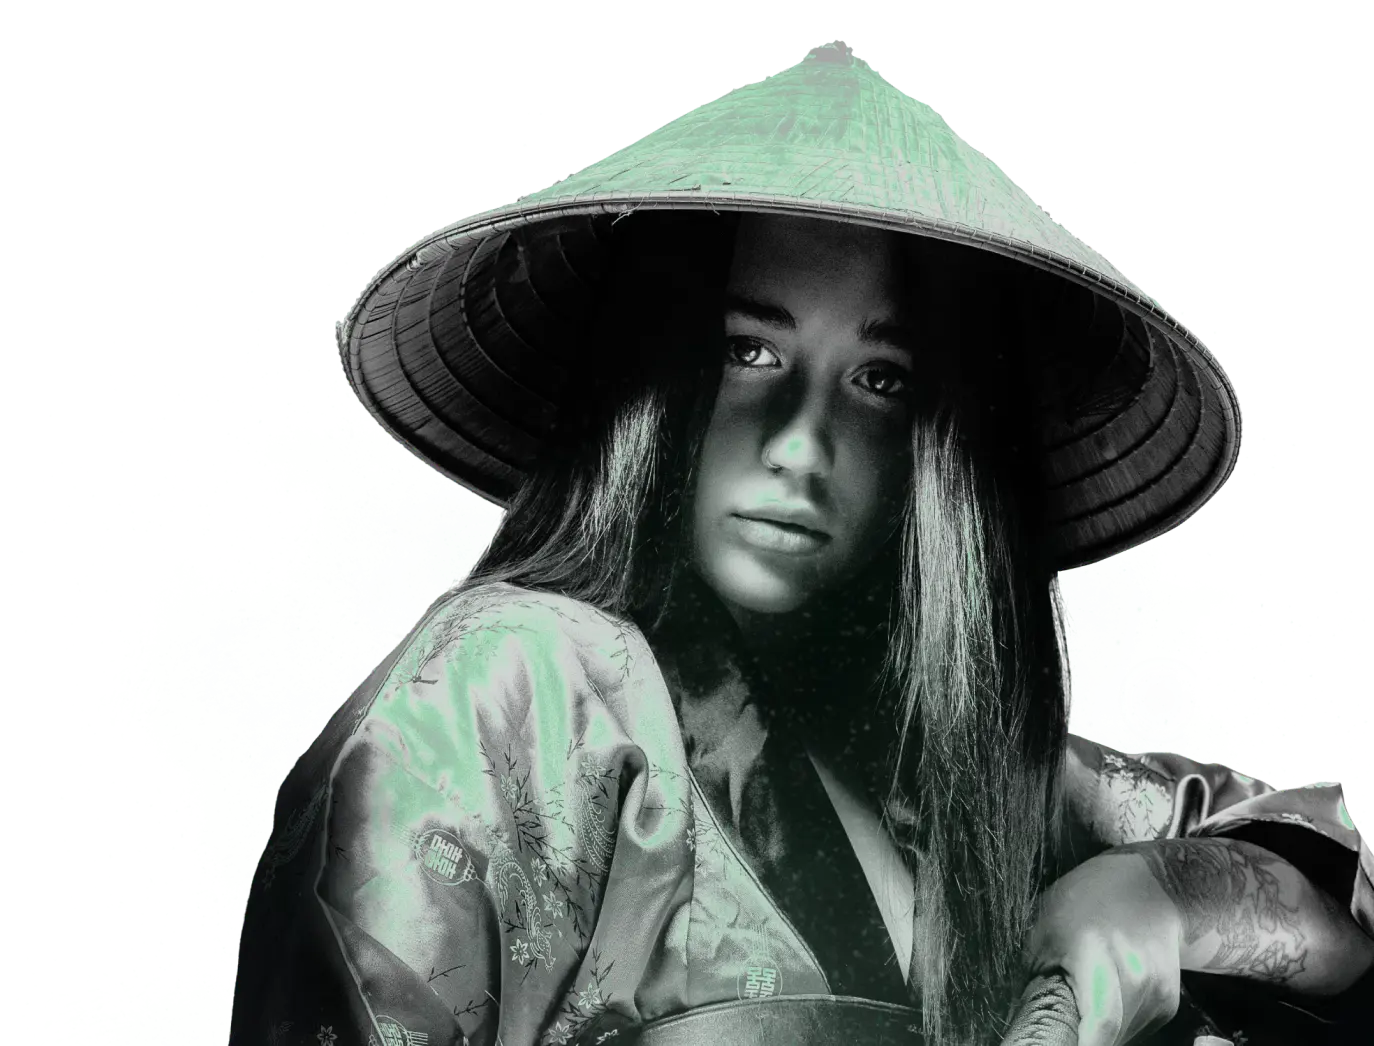 Monochromatyczna kobieta samuraj z zielonymi elementami w stylu Kryptonum, nawiązanie do akademii web developmentu